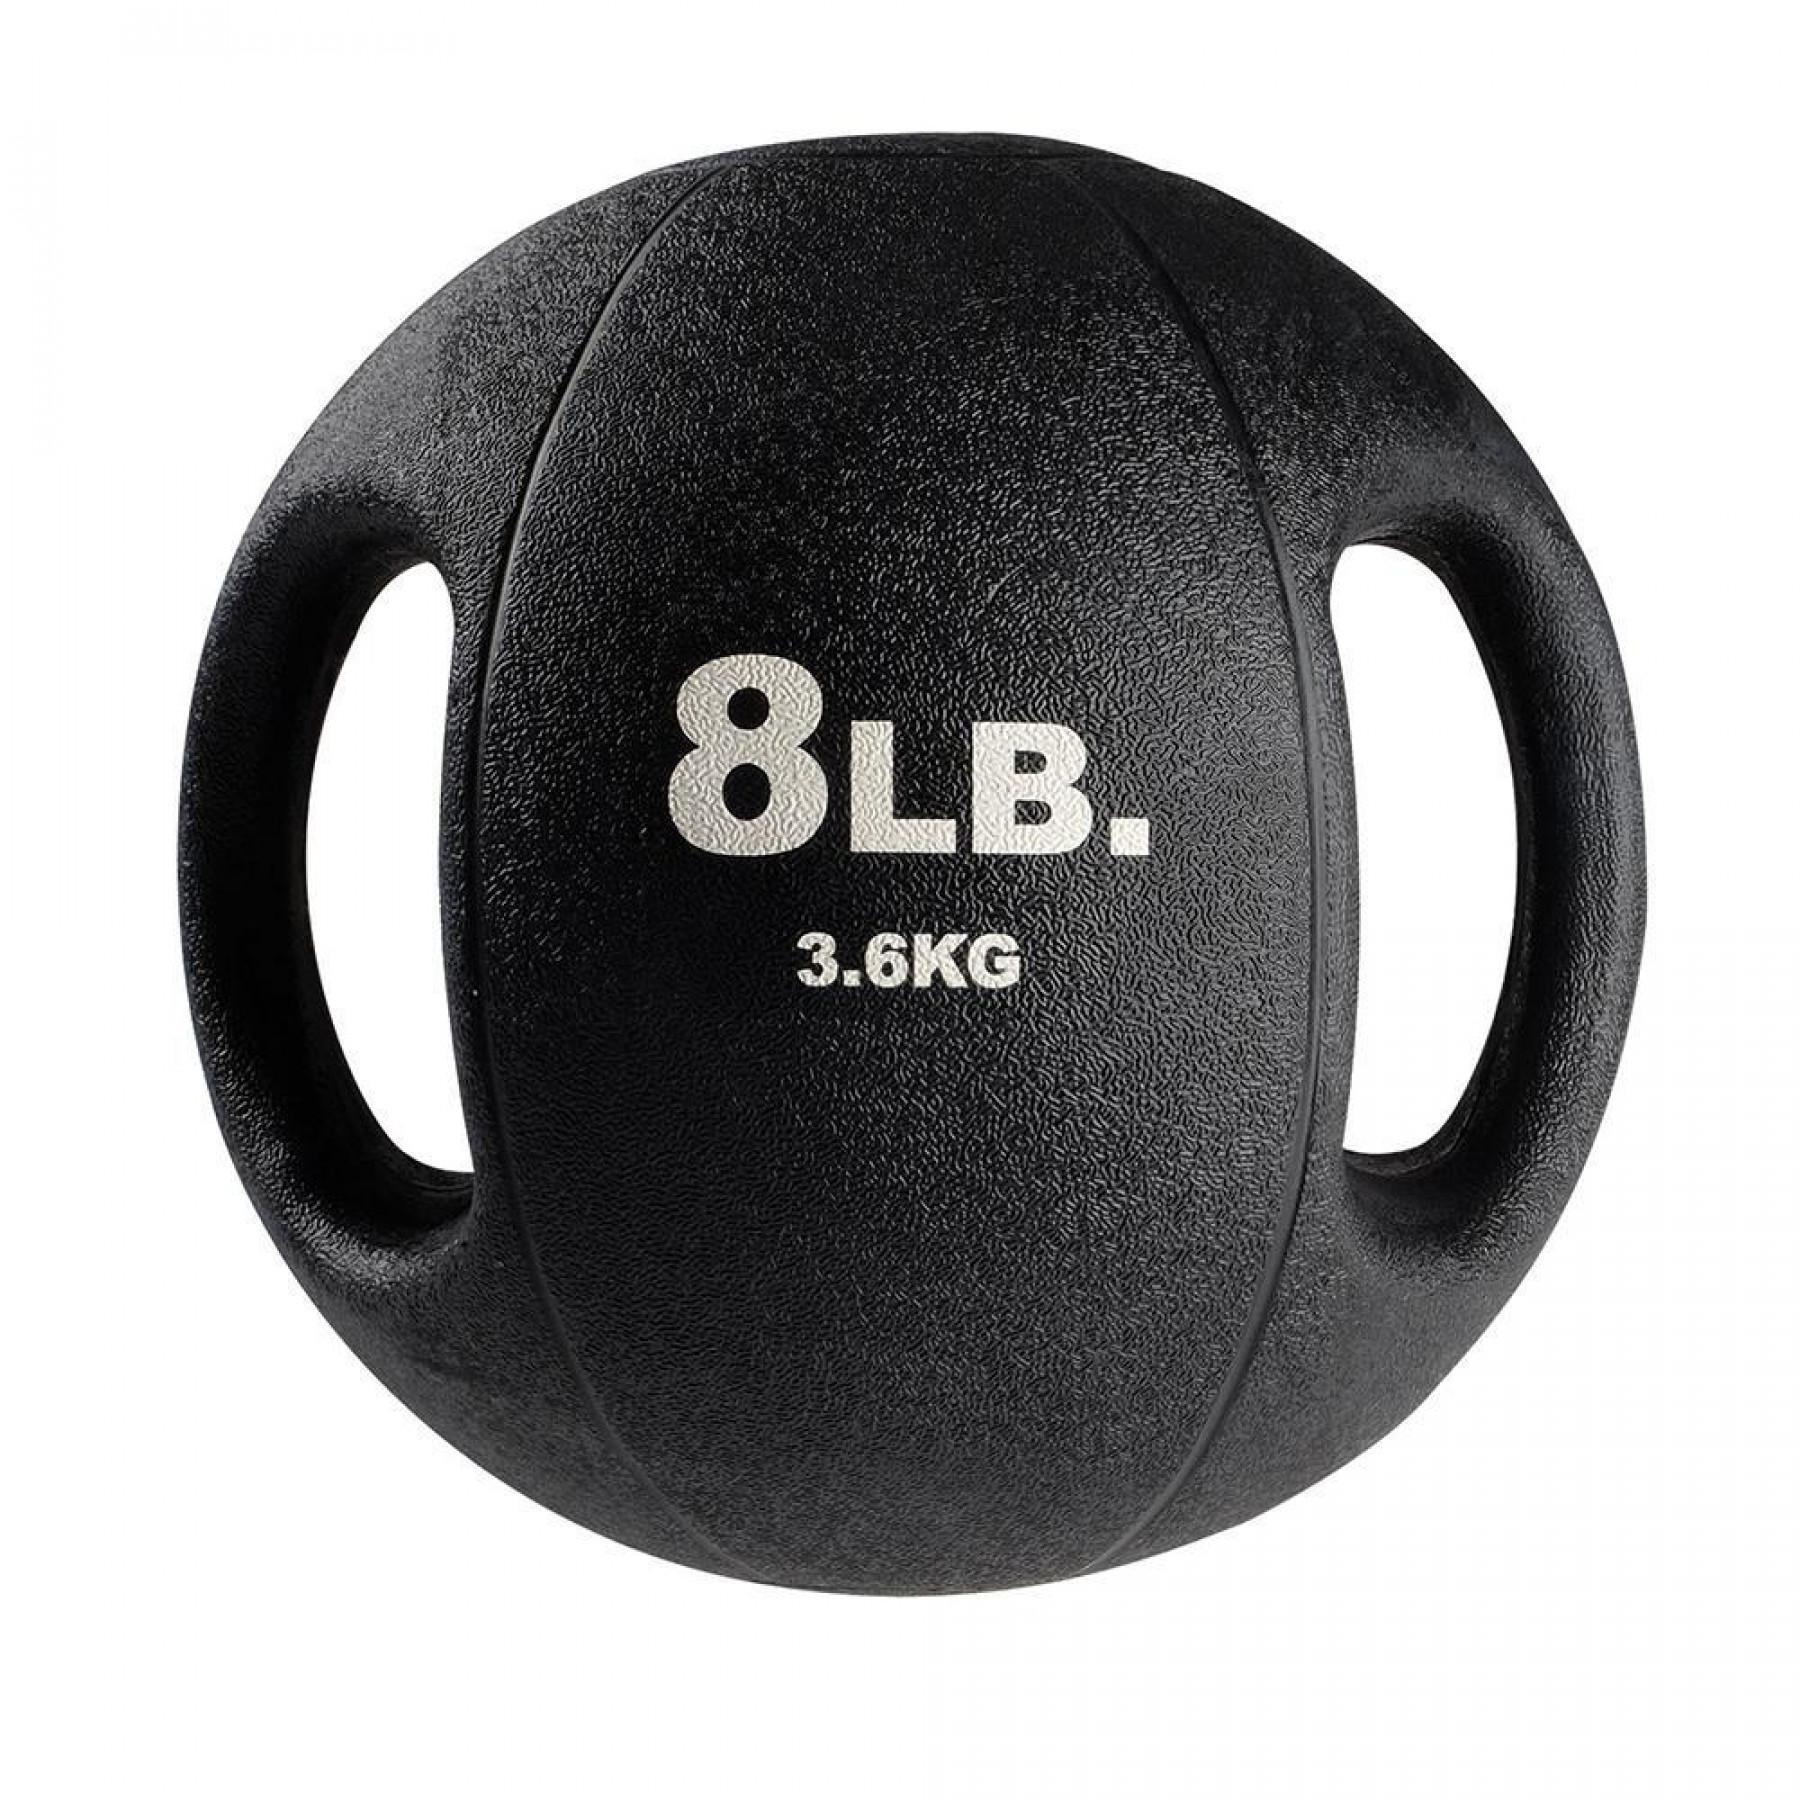 Medizinball 2 Griffe 5,4 kg Body Solid